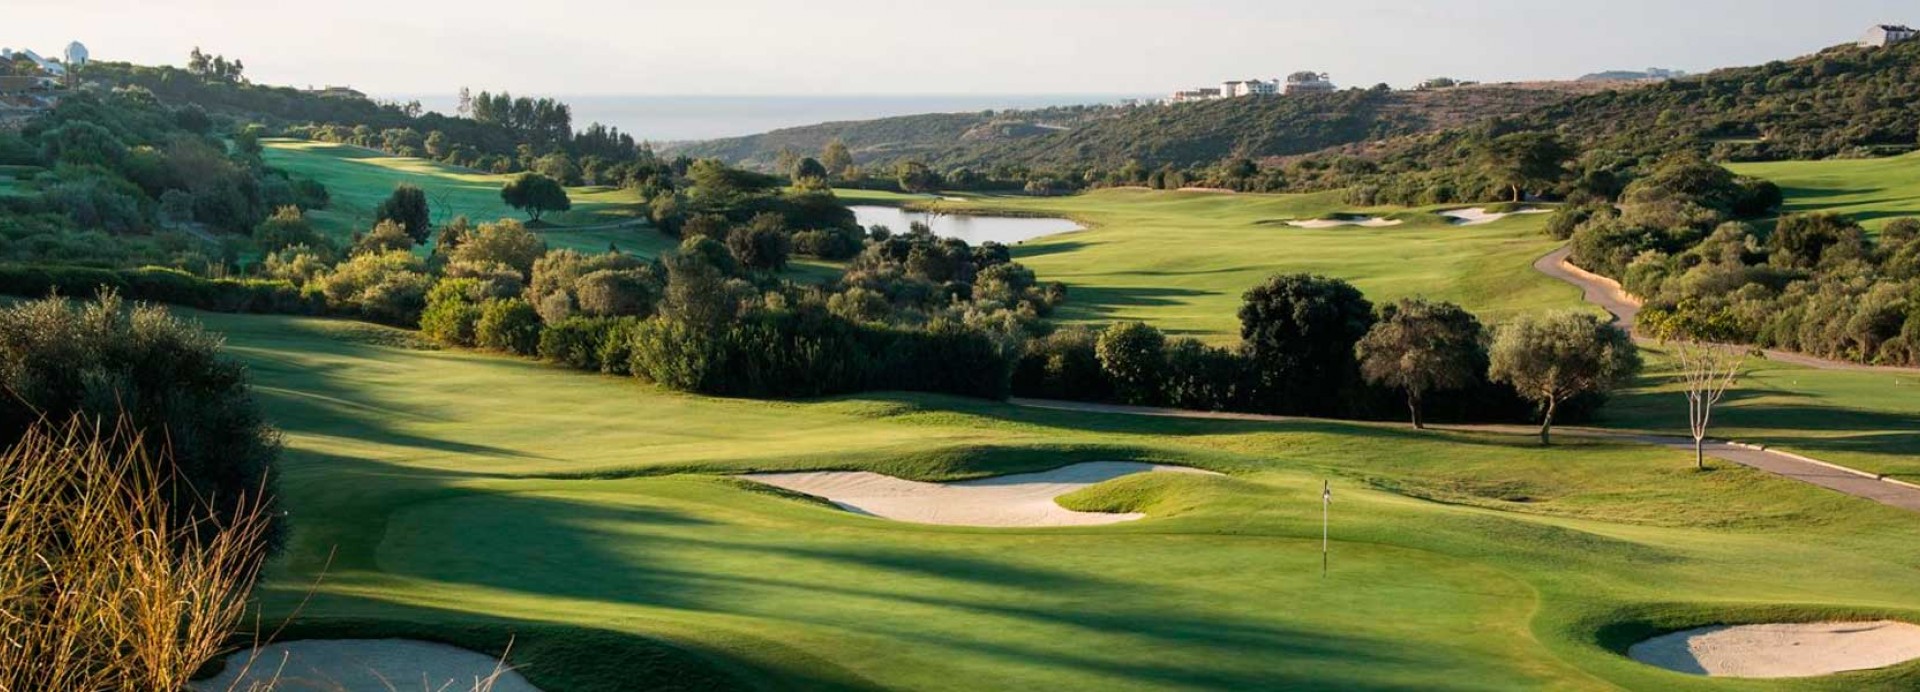 Villa Padierna - Flamingos Golf  | Golfové zájezdy, golfová dovolená, luxusní golf